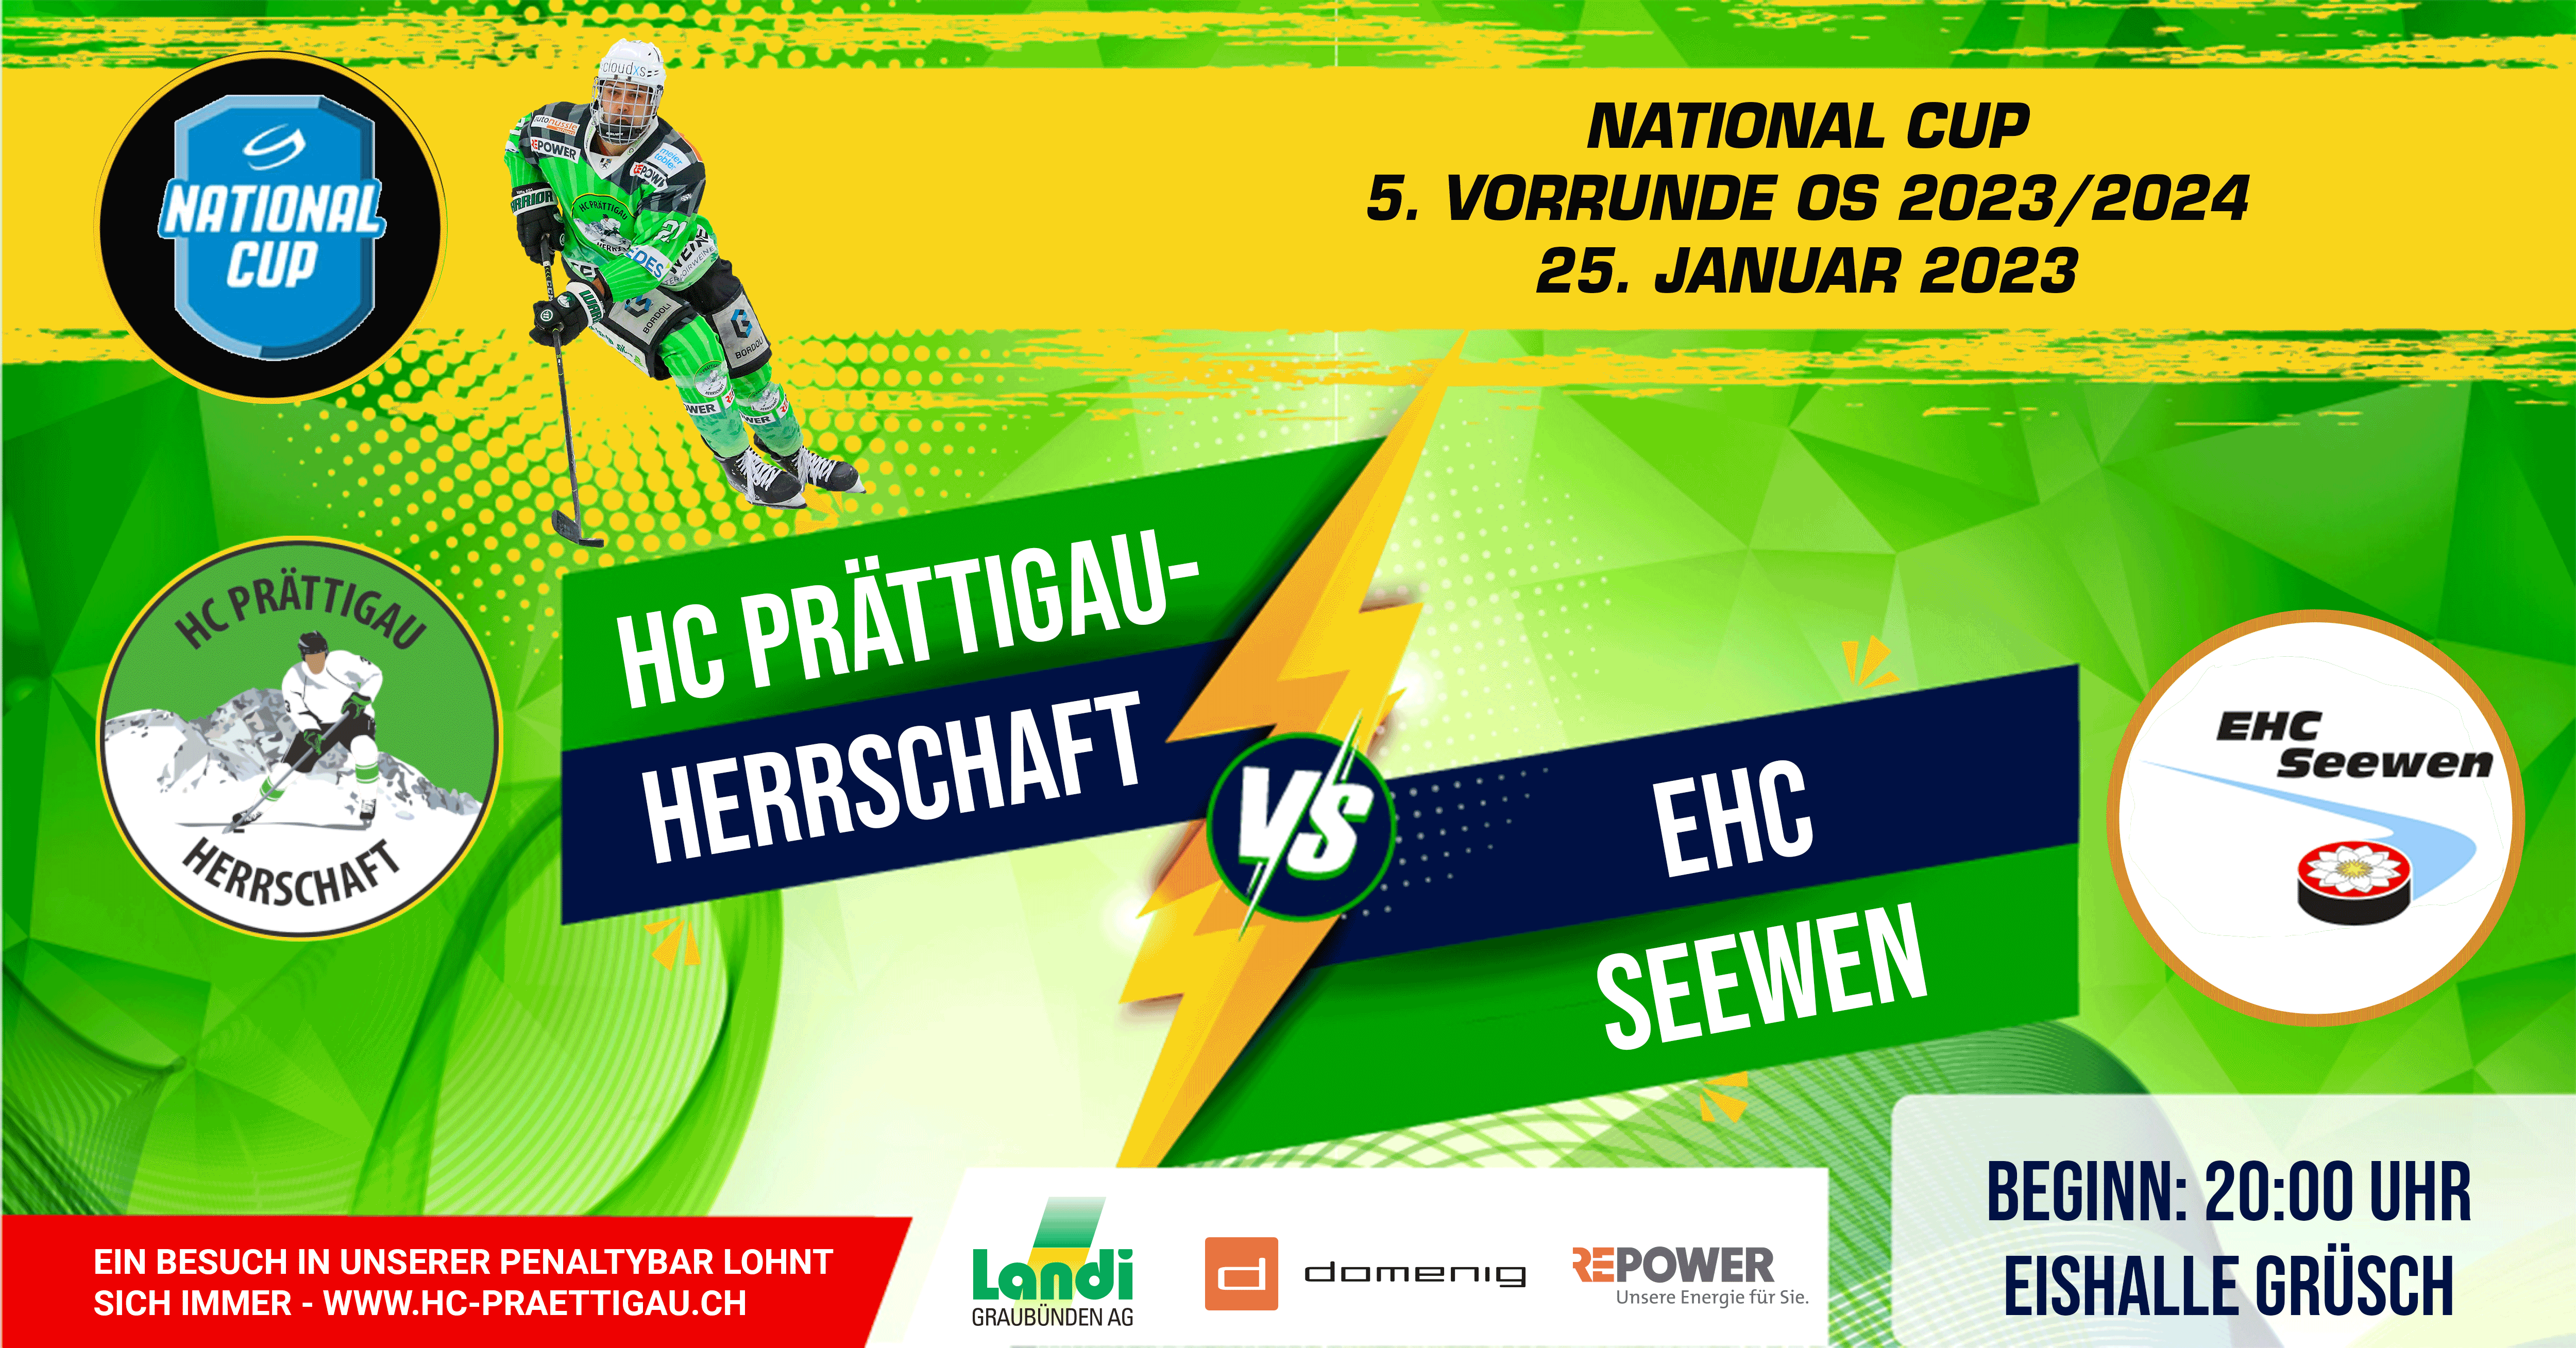 National Cup HC Prättigau-Herrschaft vs. EHC Seewen Eishalle Grüsch, Au 5, 7214 Grüsch Tickets